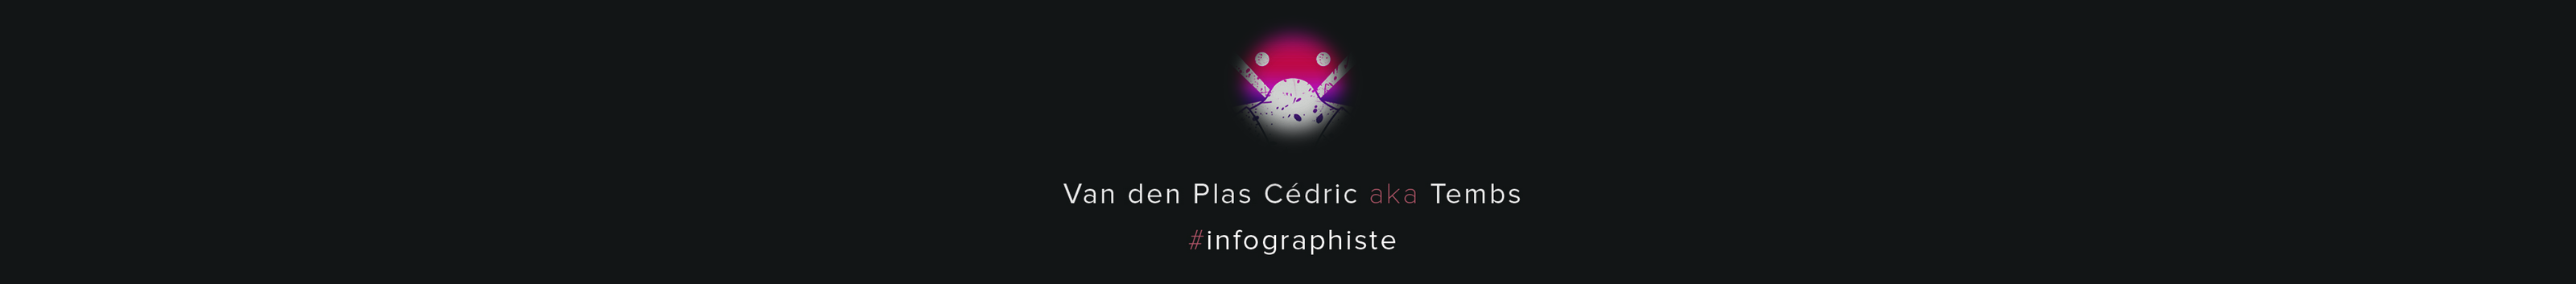 Banner profilu uživatele Cédric Van den Plas